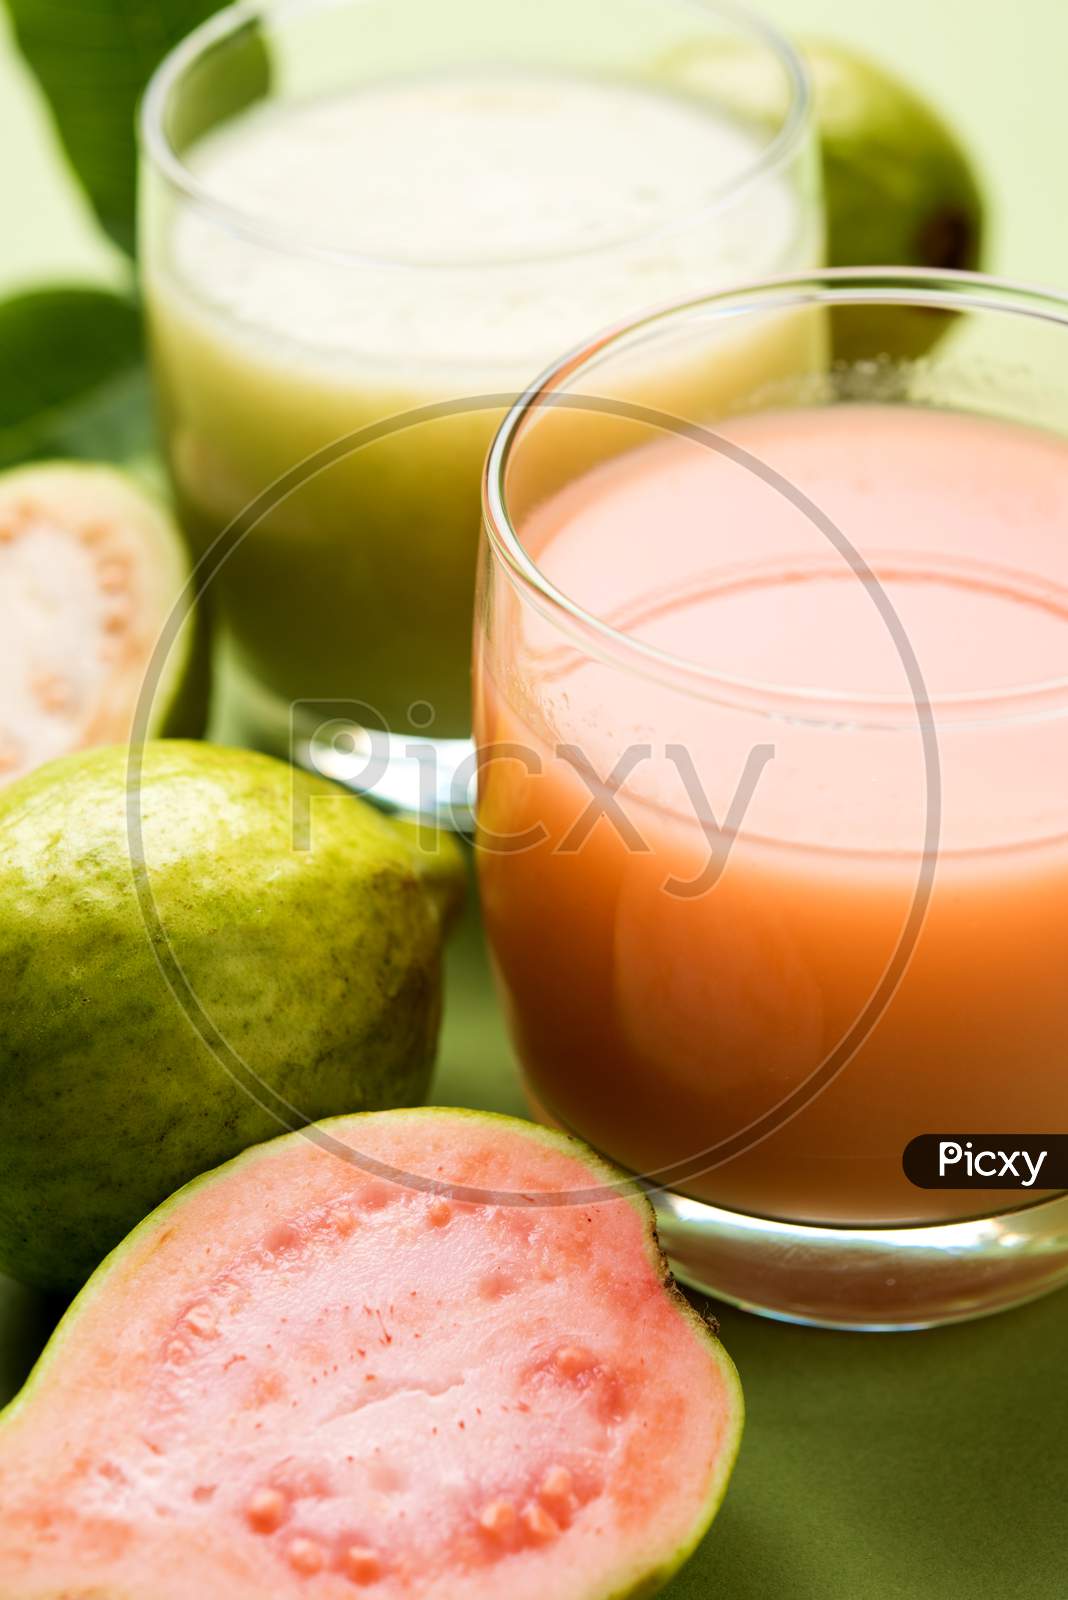 Guava  juice or Amrud drink or Smoothie